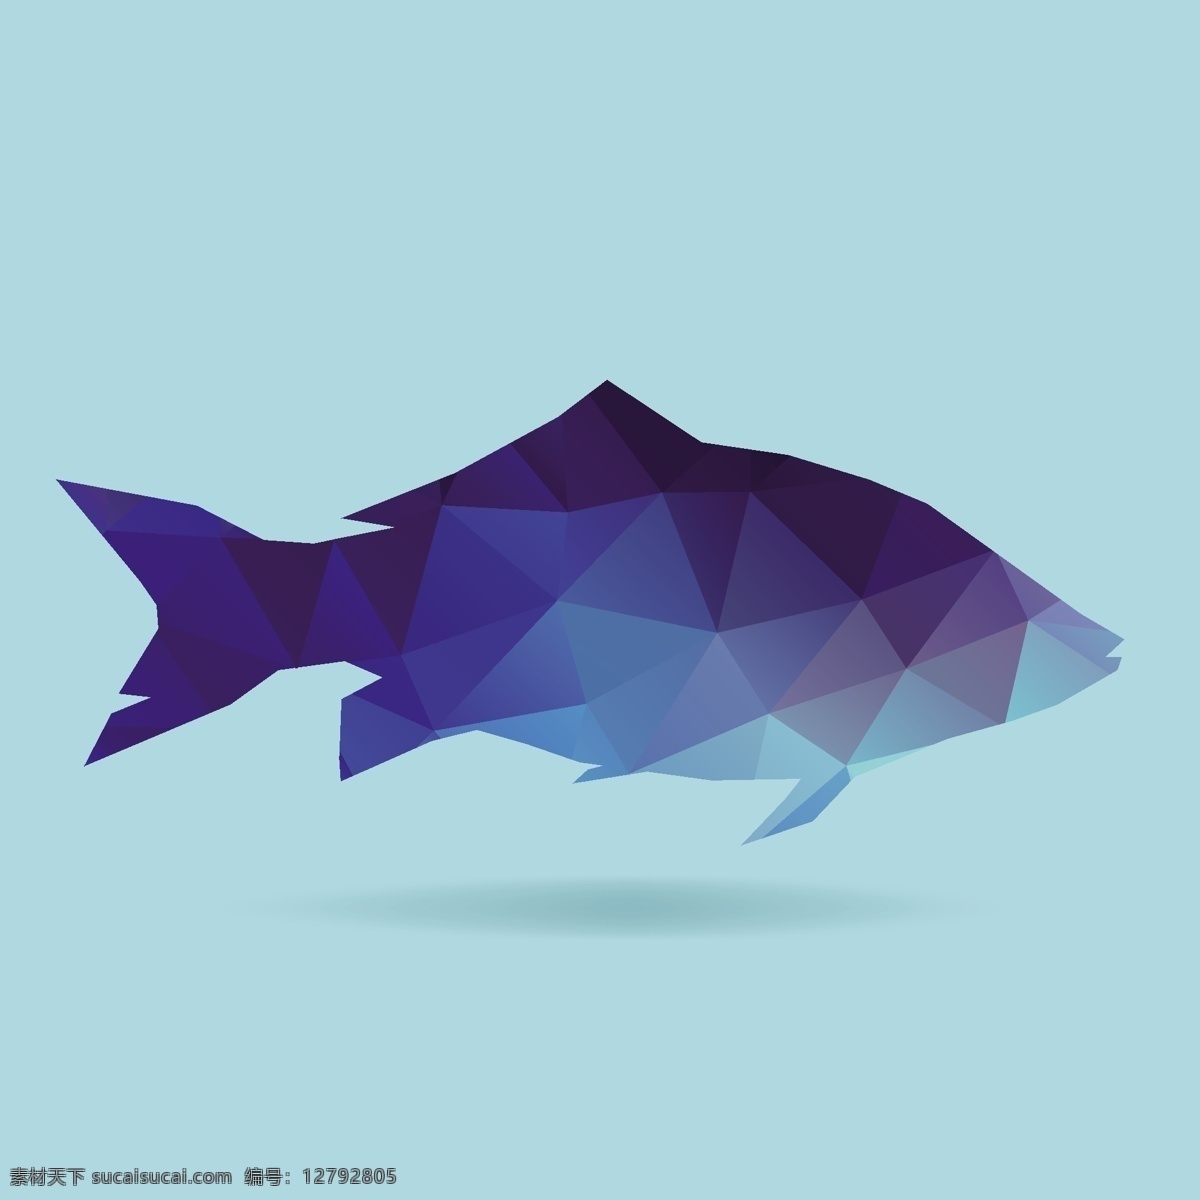 热带鱼 动物 色块 色块动物 色彩动物 几何动物 动物图形 几何拼接动物 何图形动物 装饰画 动物插画 插画 海报 背景 矢量图 矢量